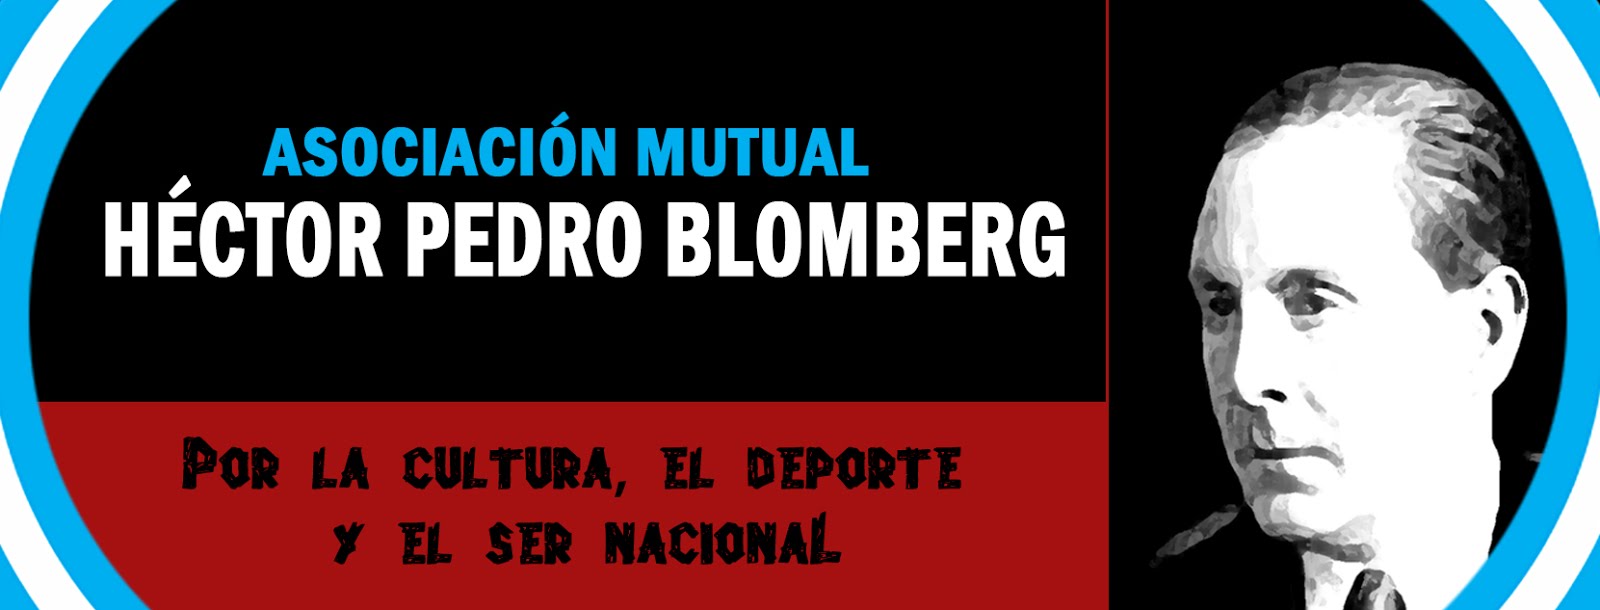 Asociación Mutual Héctor Pedro Blomberg